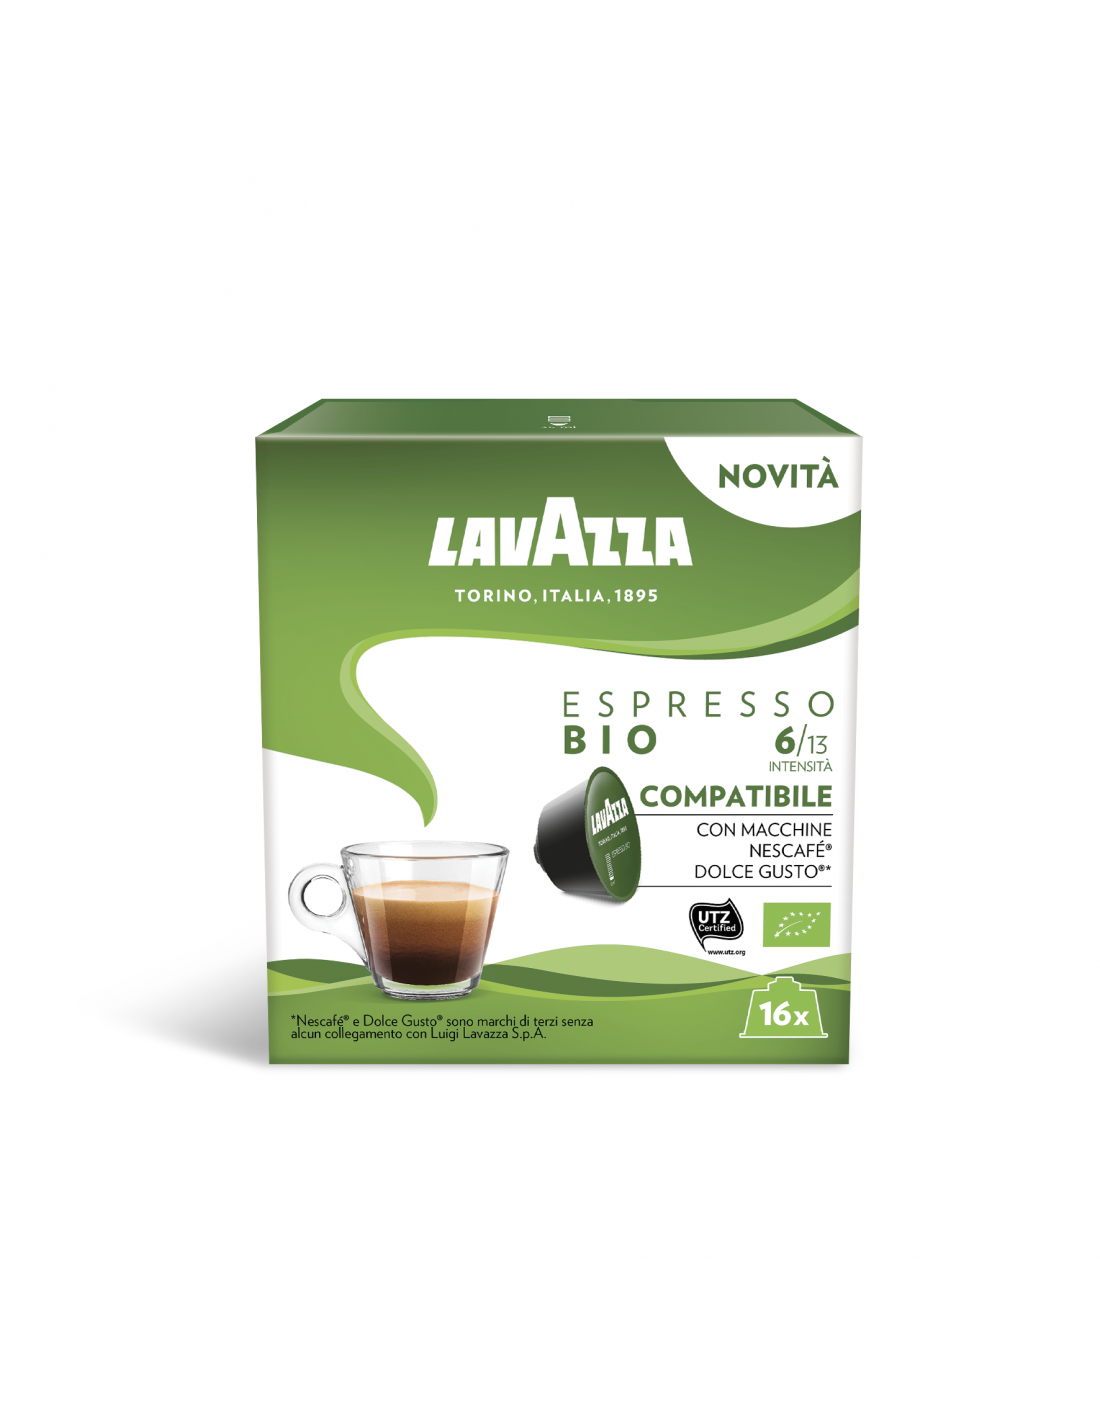 Lavazza Espresso Bio compatible with Nescafe Dolce Gusto - P&C SPA -  MyBusinessCibus